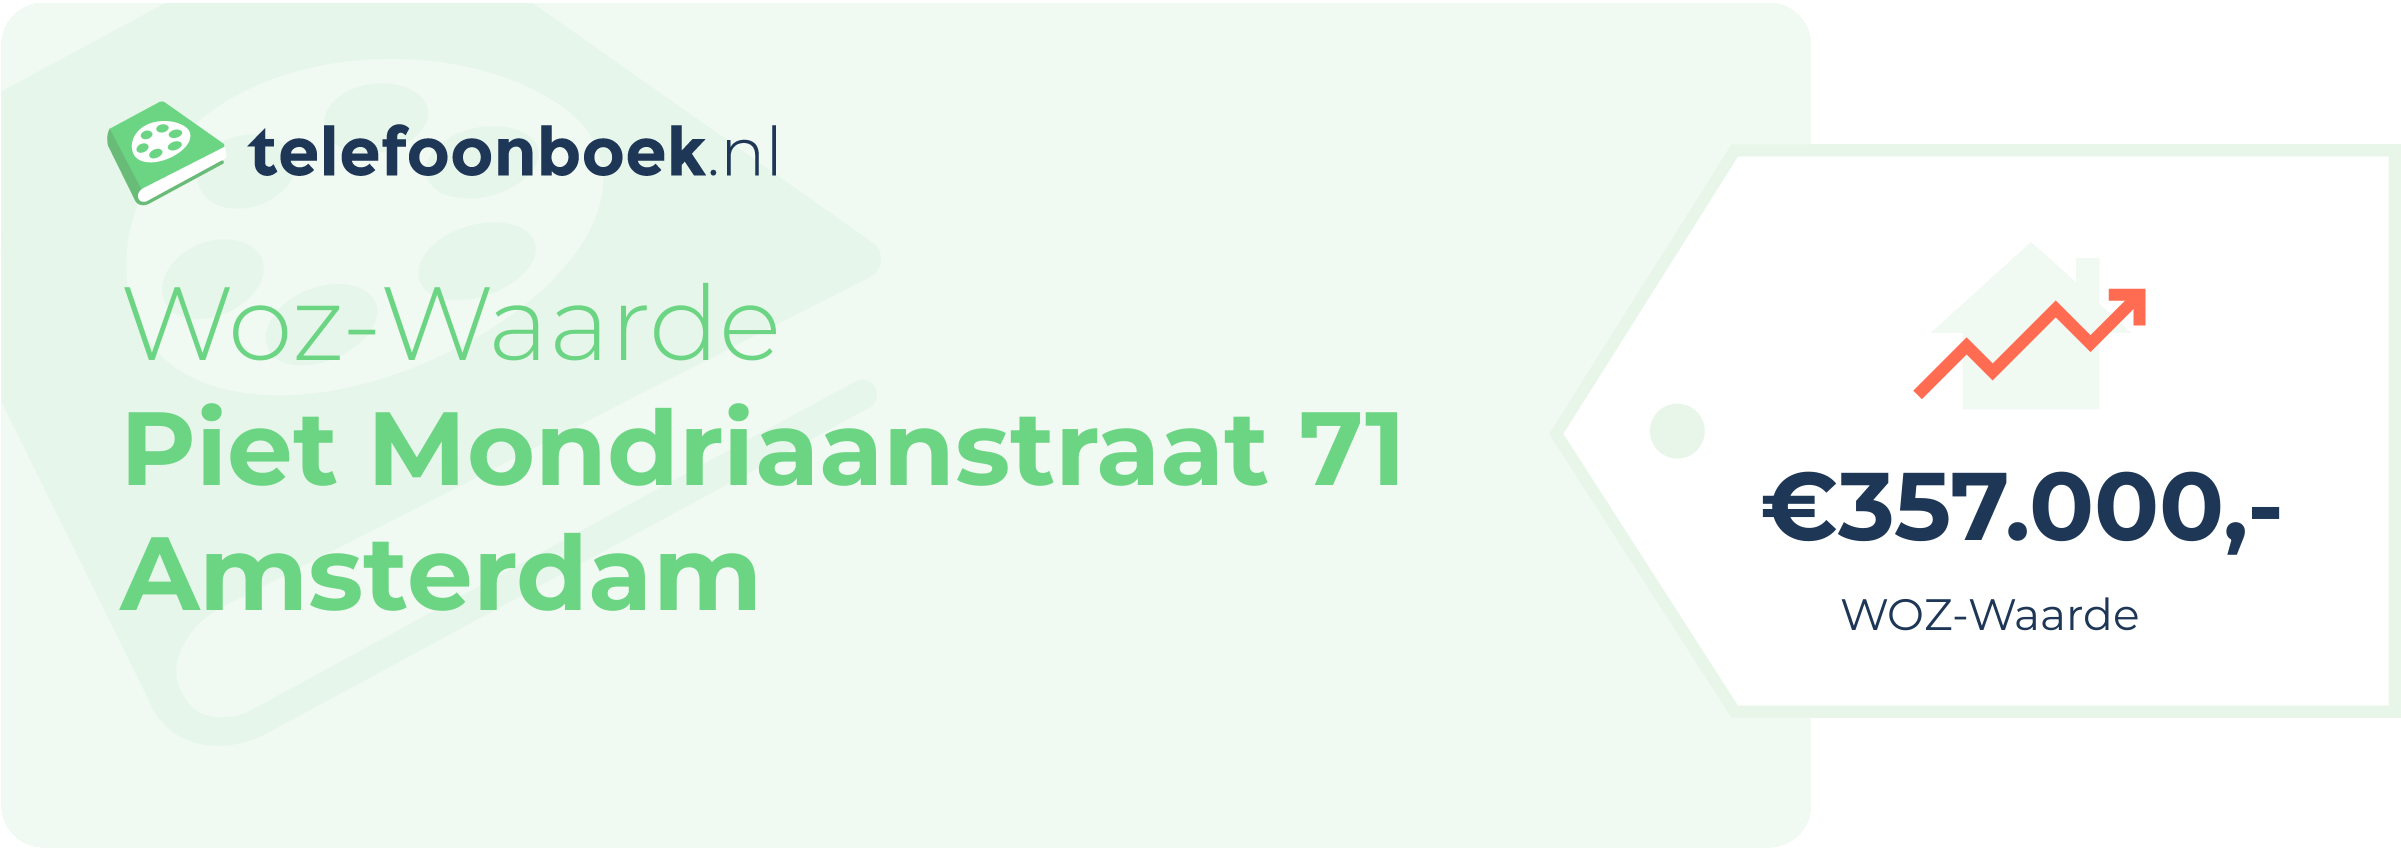 WOZ-waarde Piet Mondriaanstraat 71 Amsterdam